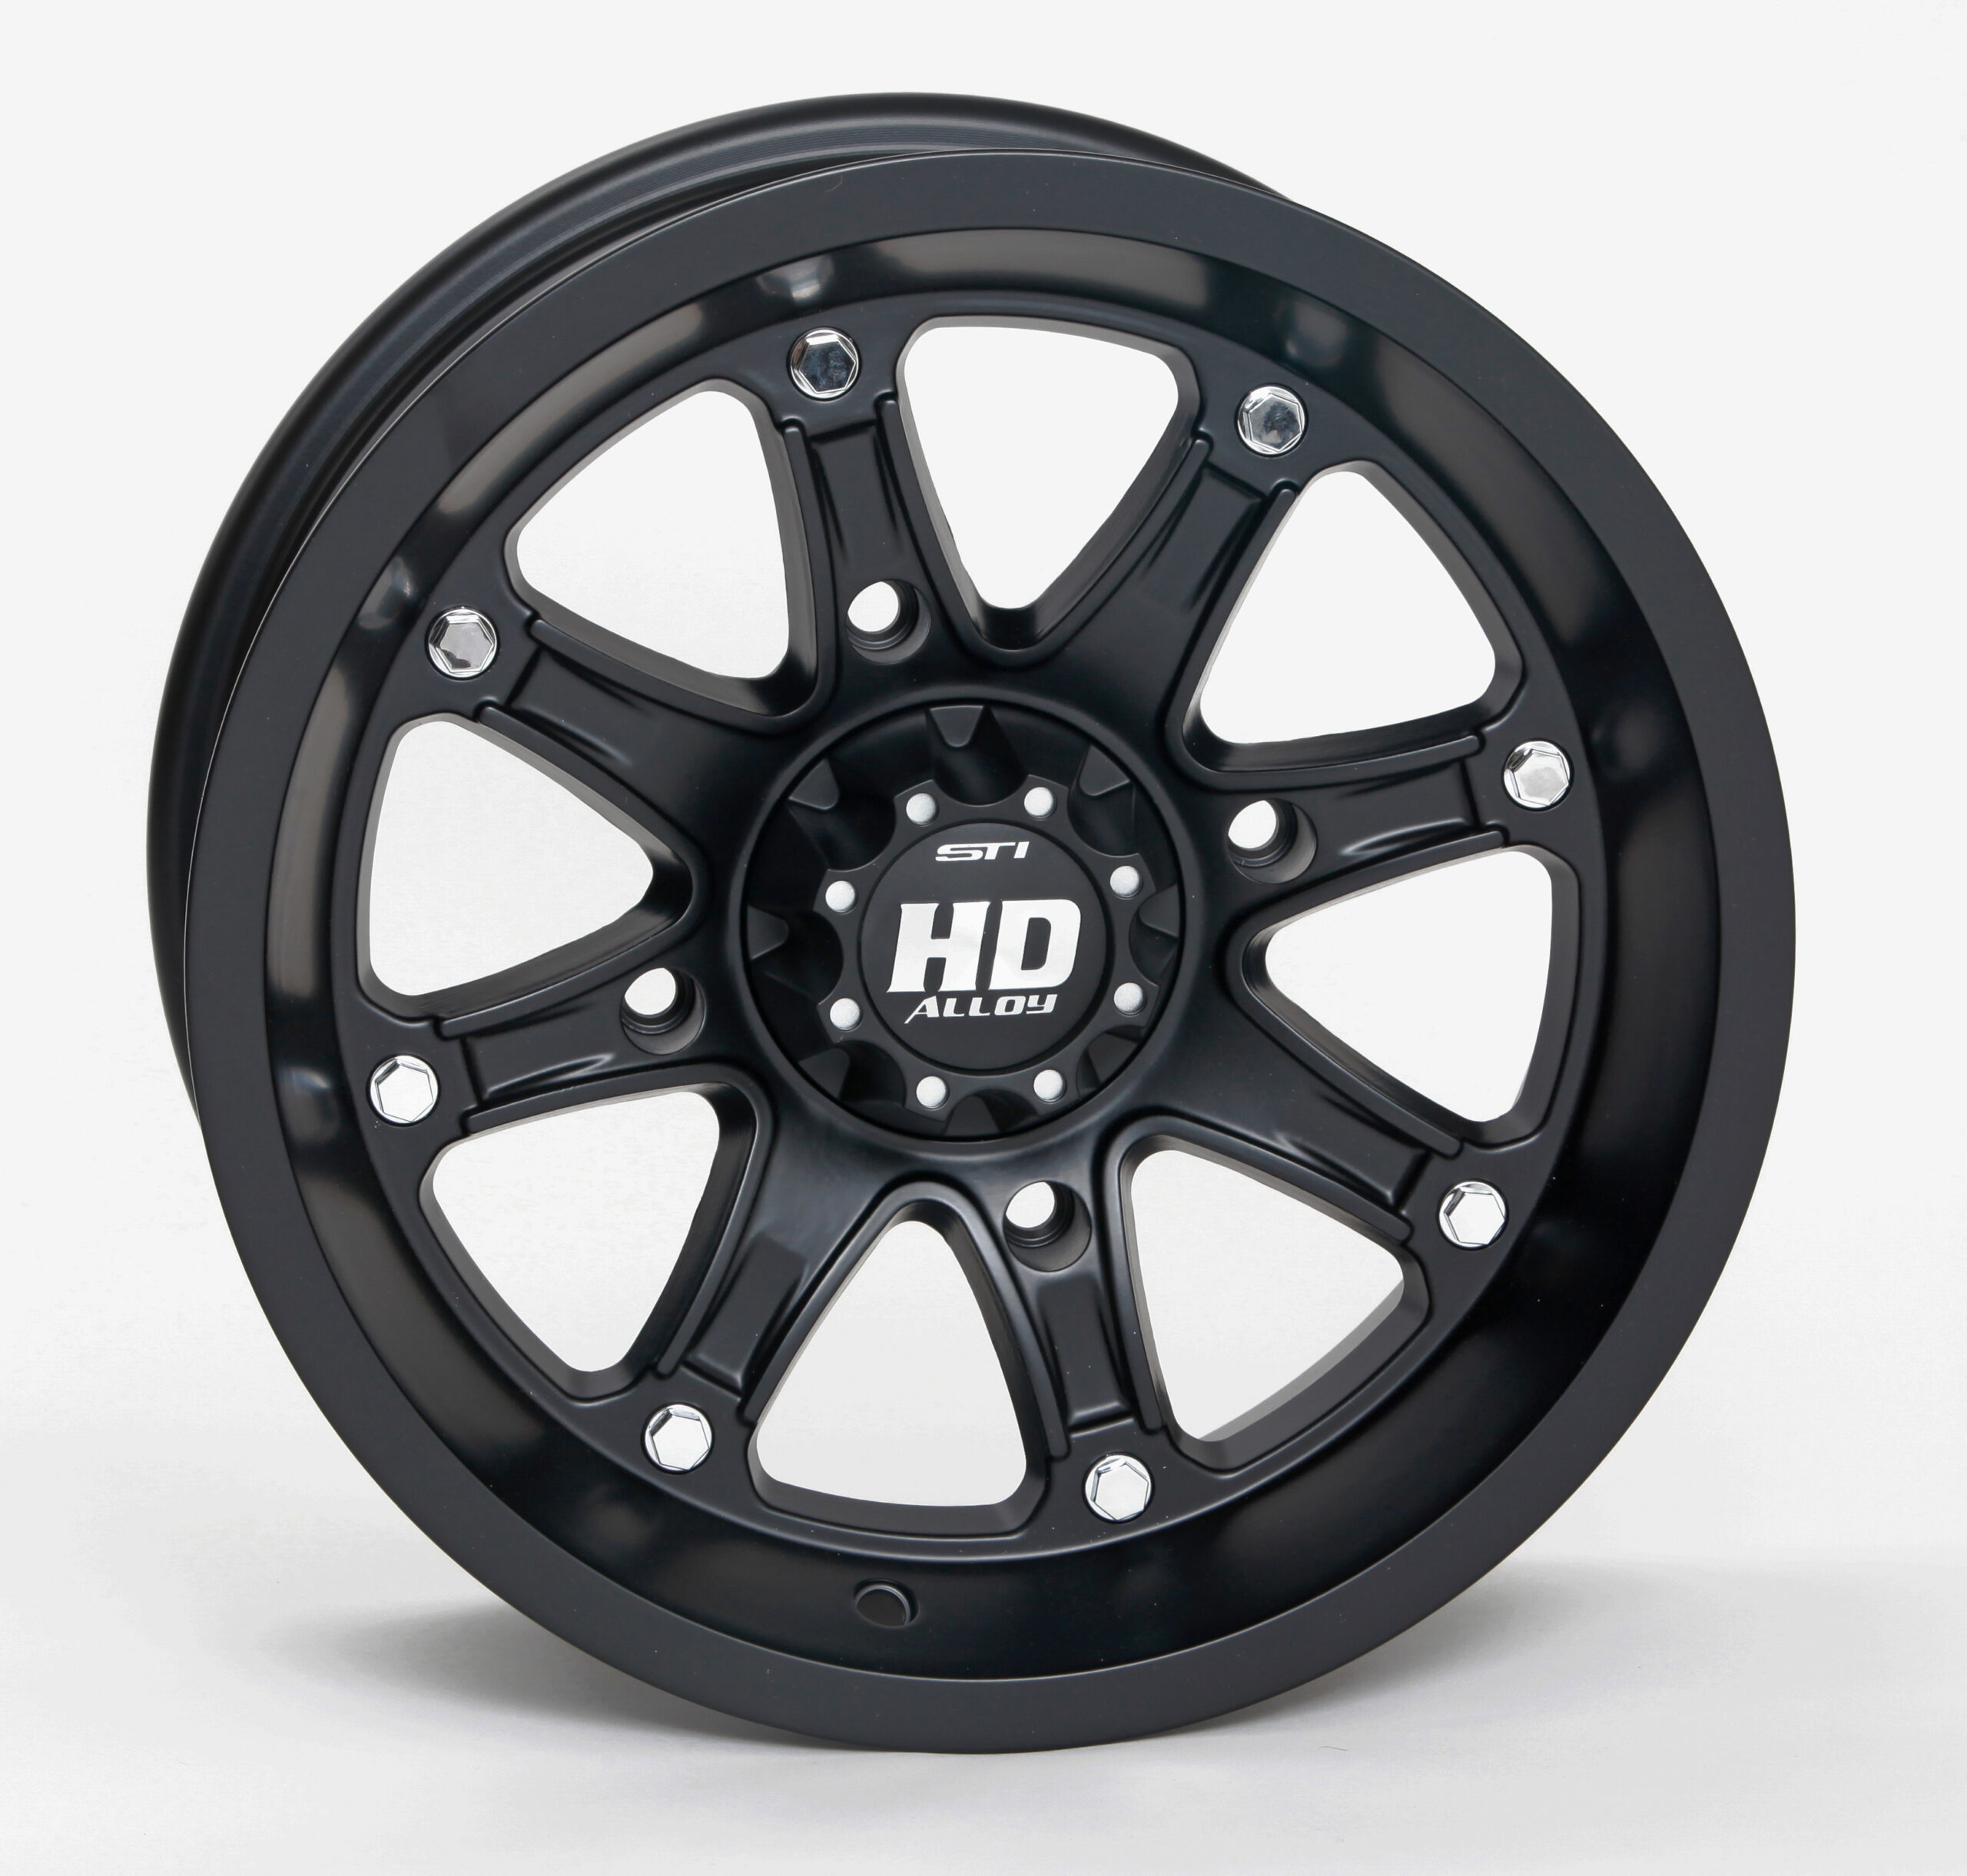 STI Off-Road Introduces HD4 Ltd. Matte Black Wheels